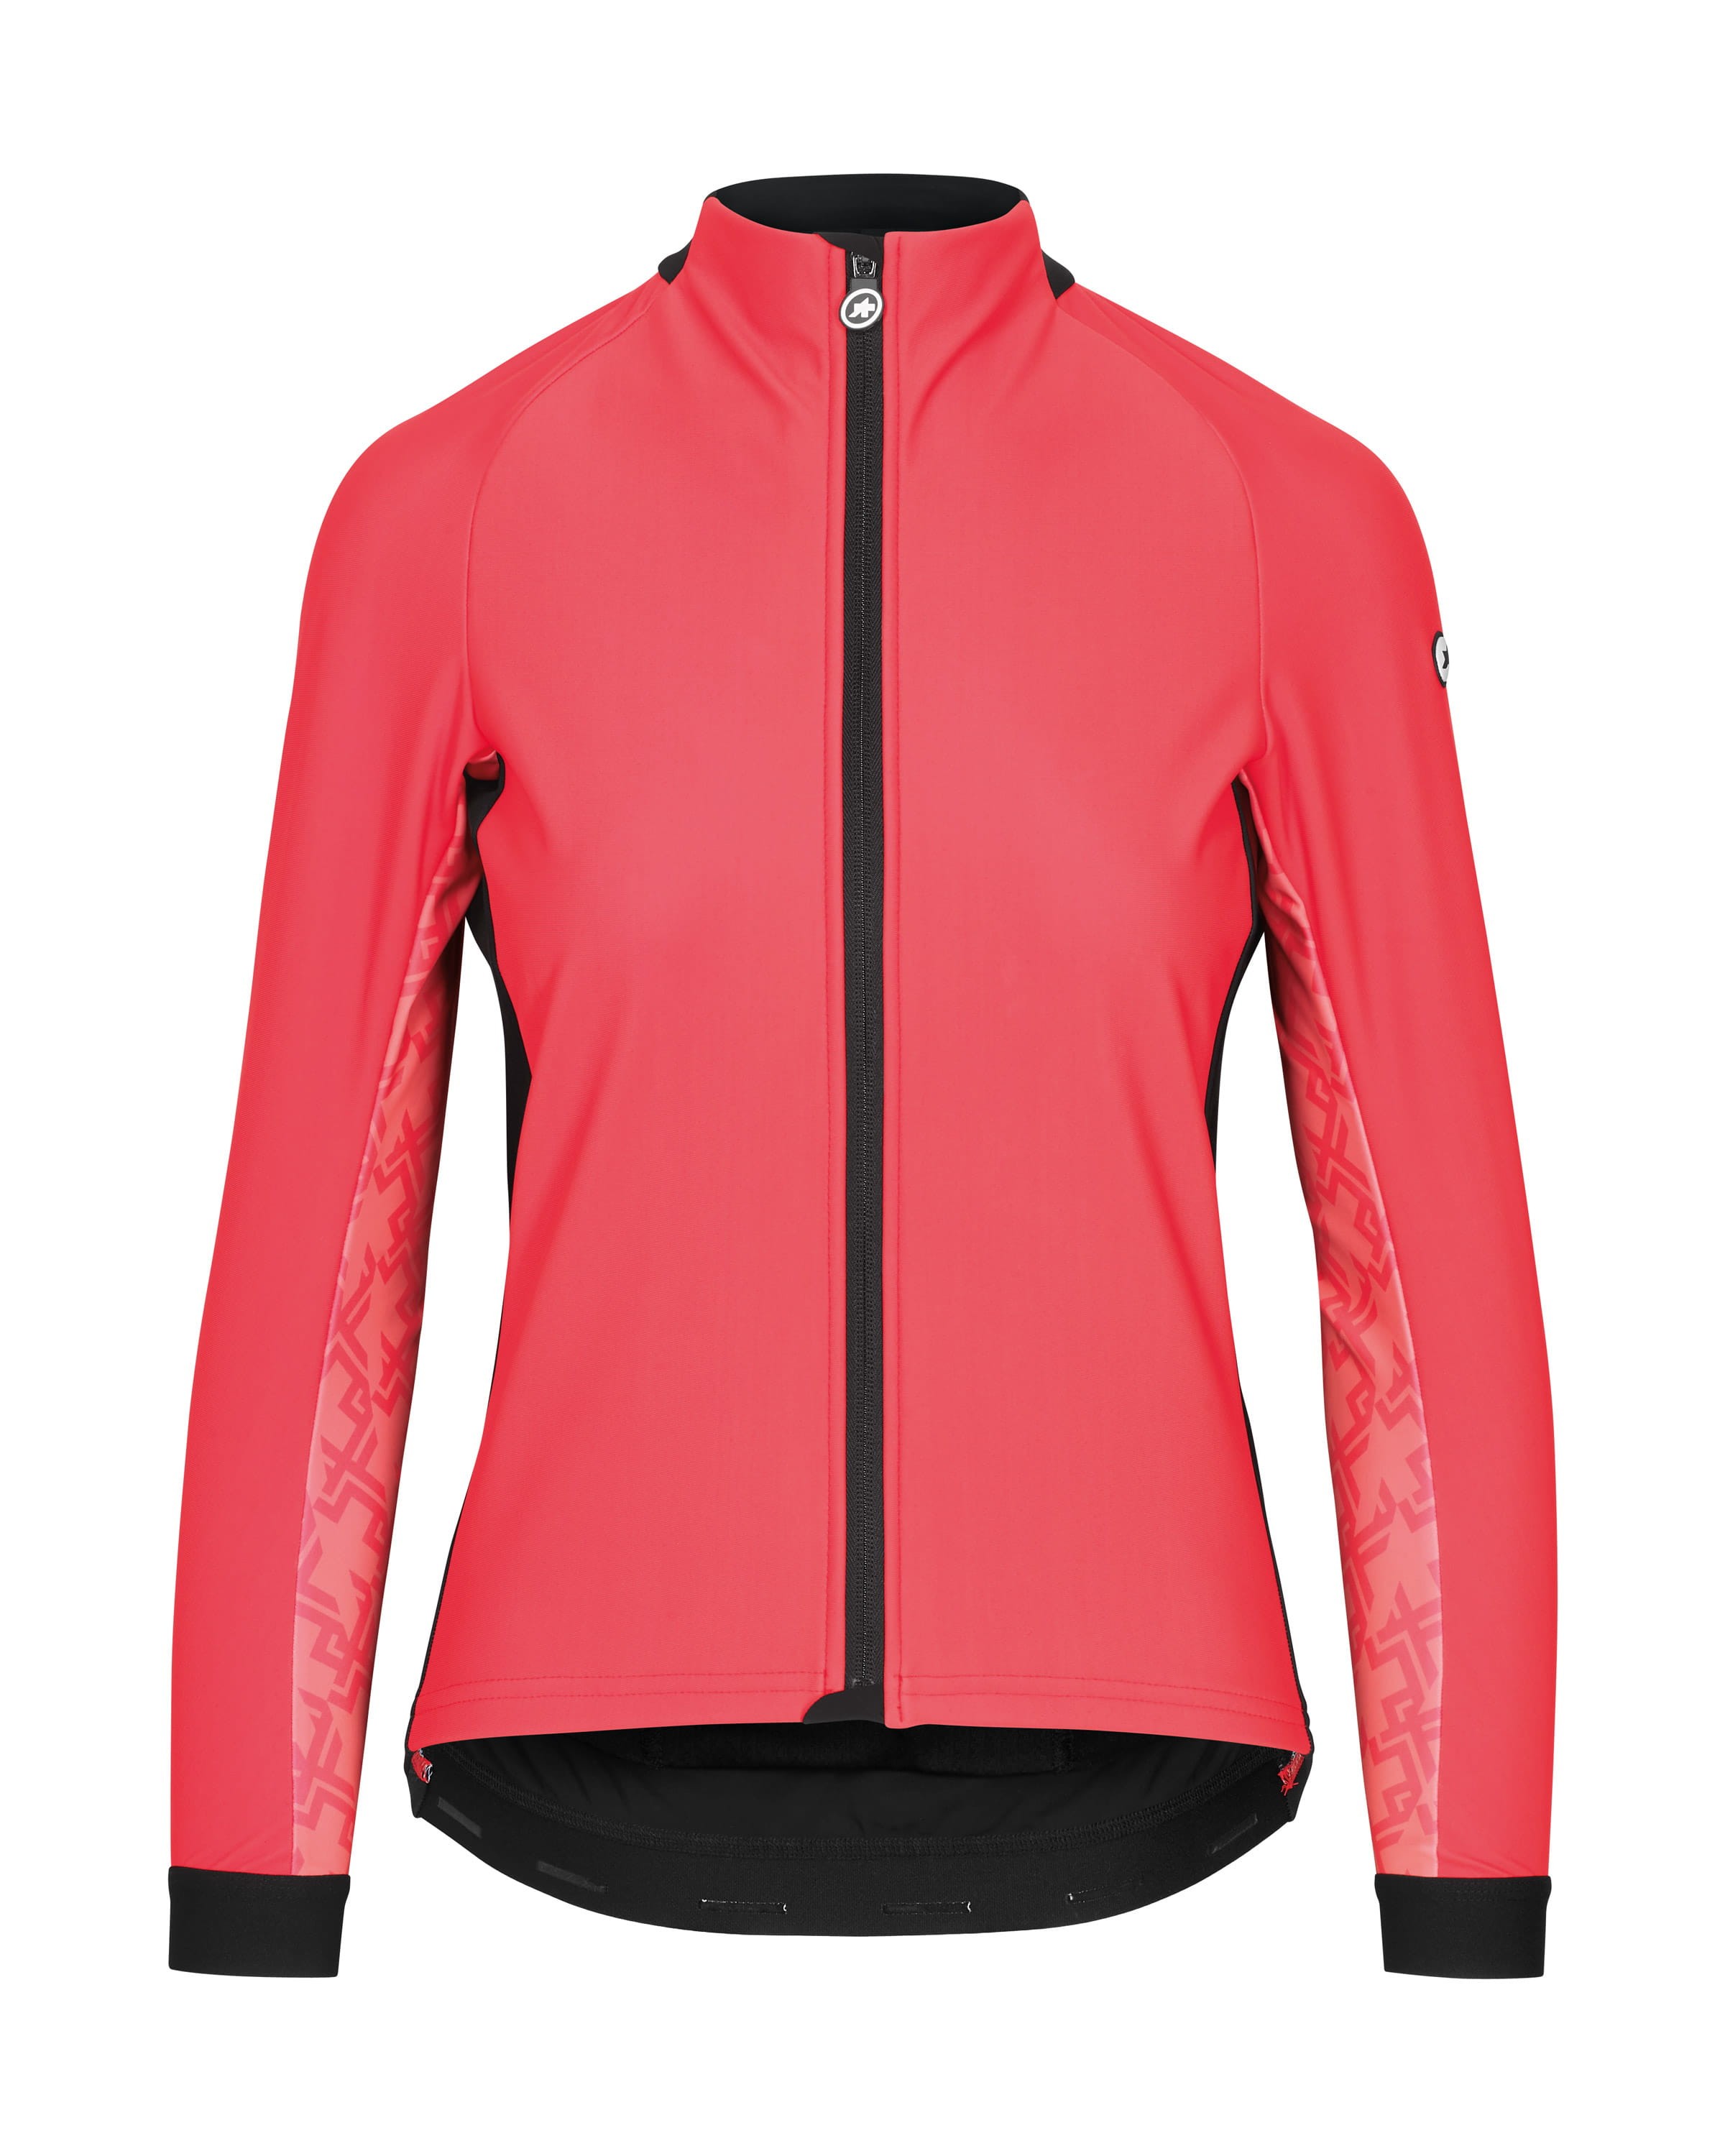 Assos uma gt winter veste de cyclisme femme galaxy rose